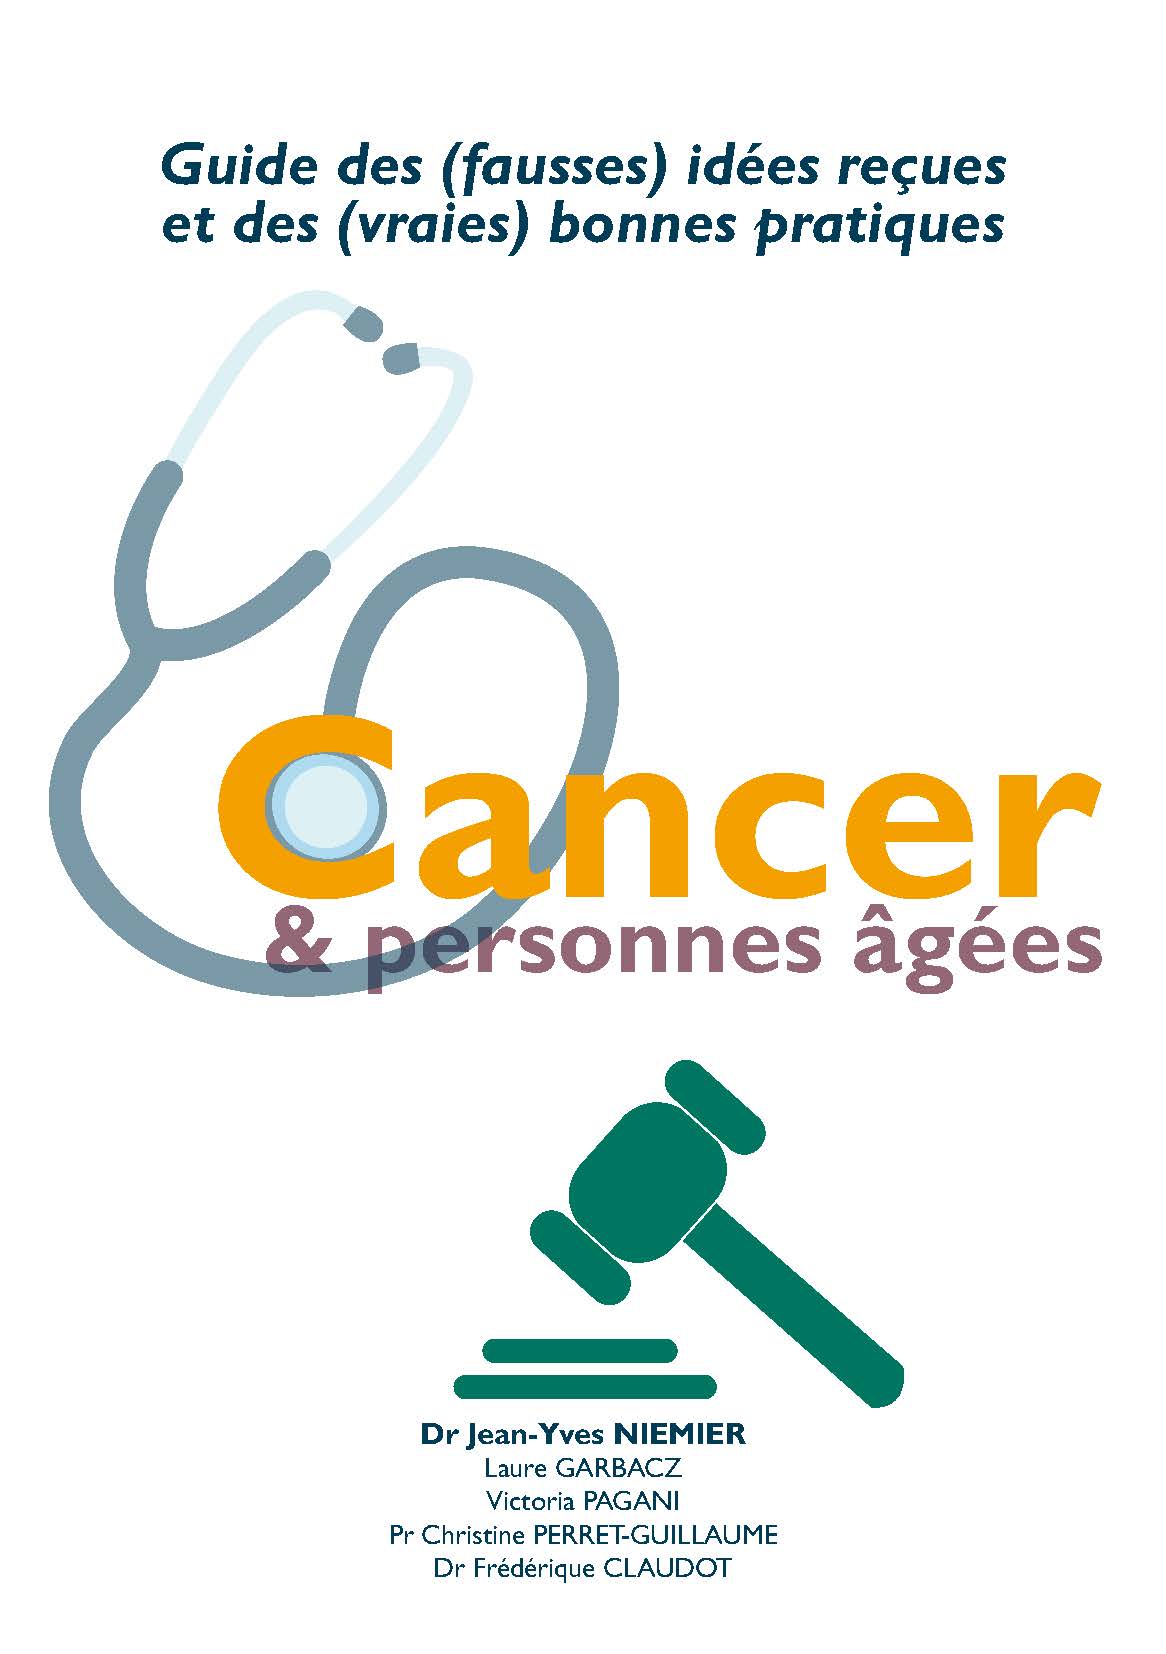 Pages de guide idees recues bonnes pratiques cancer personnes agees web